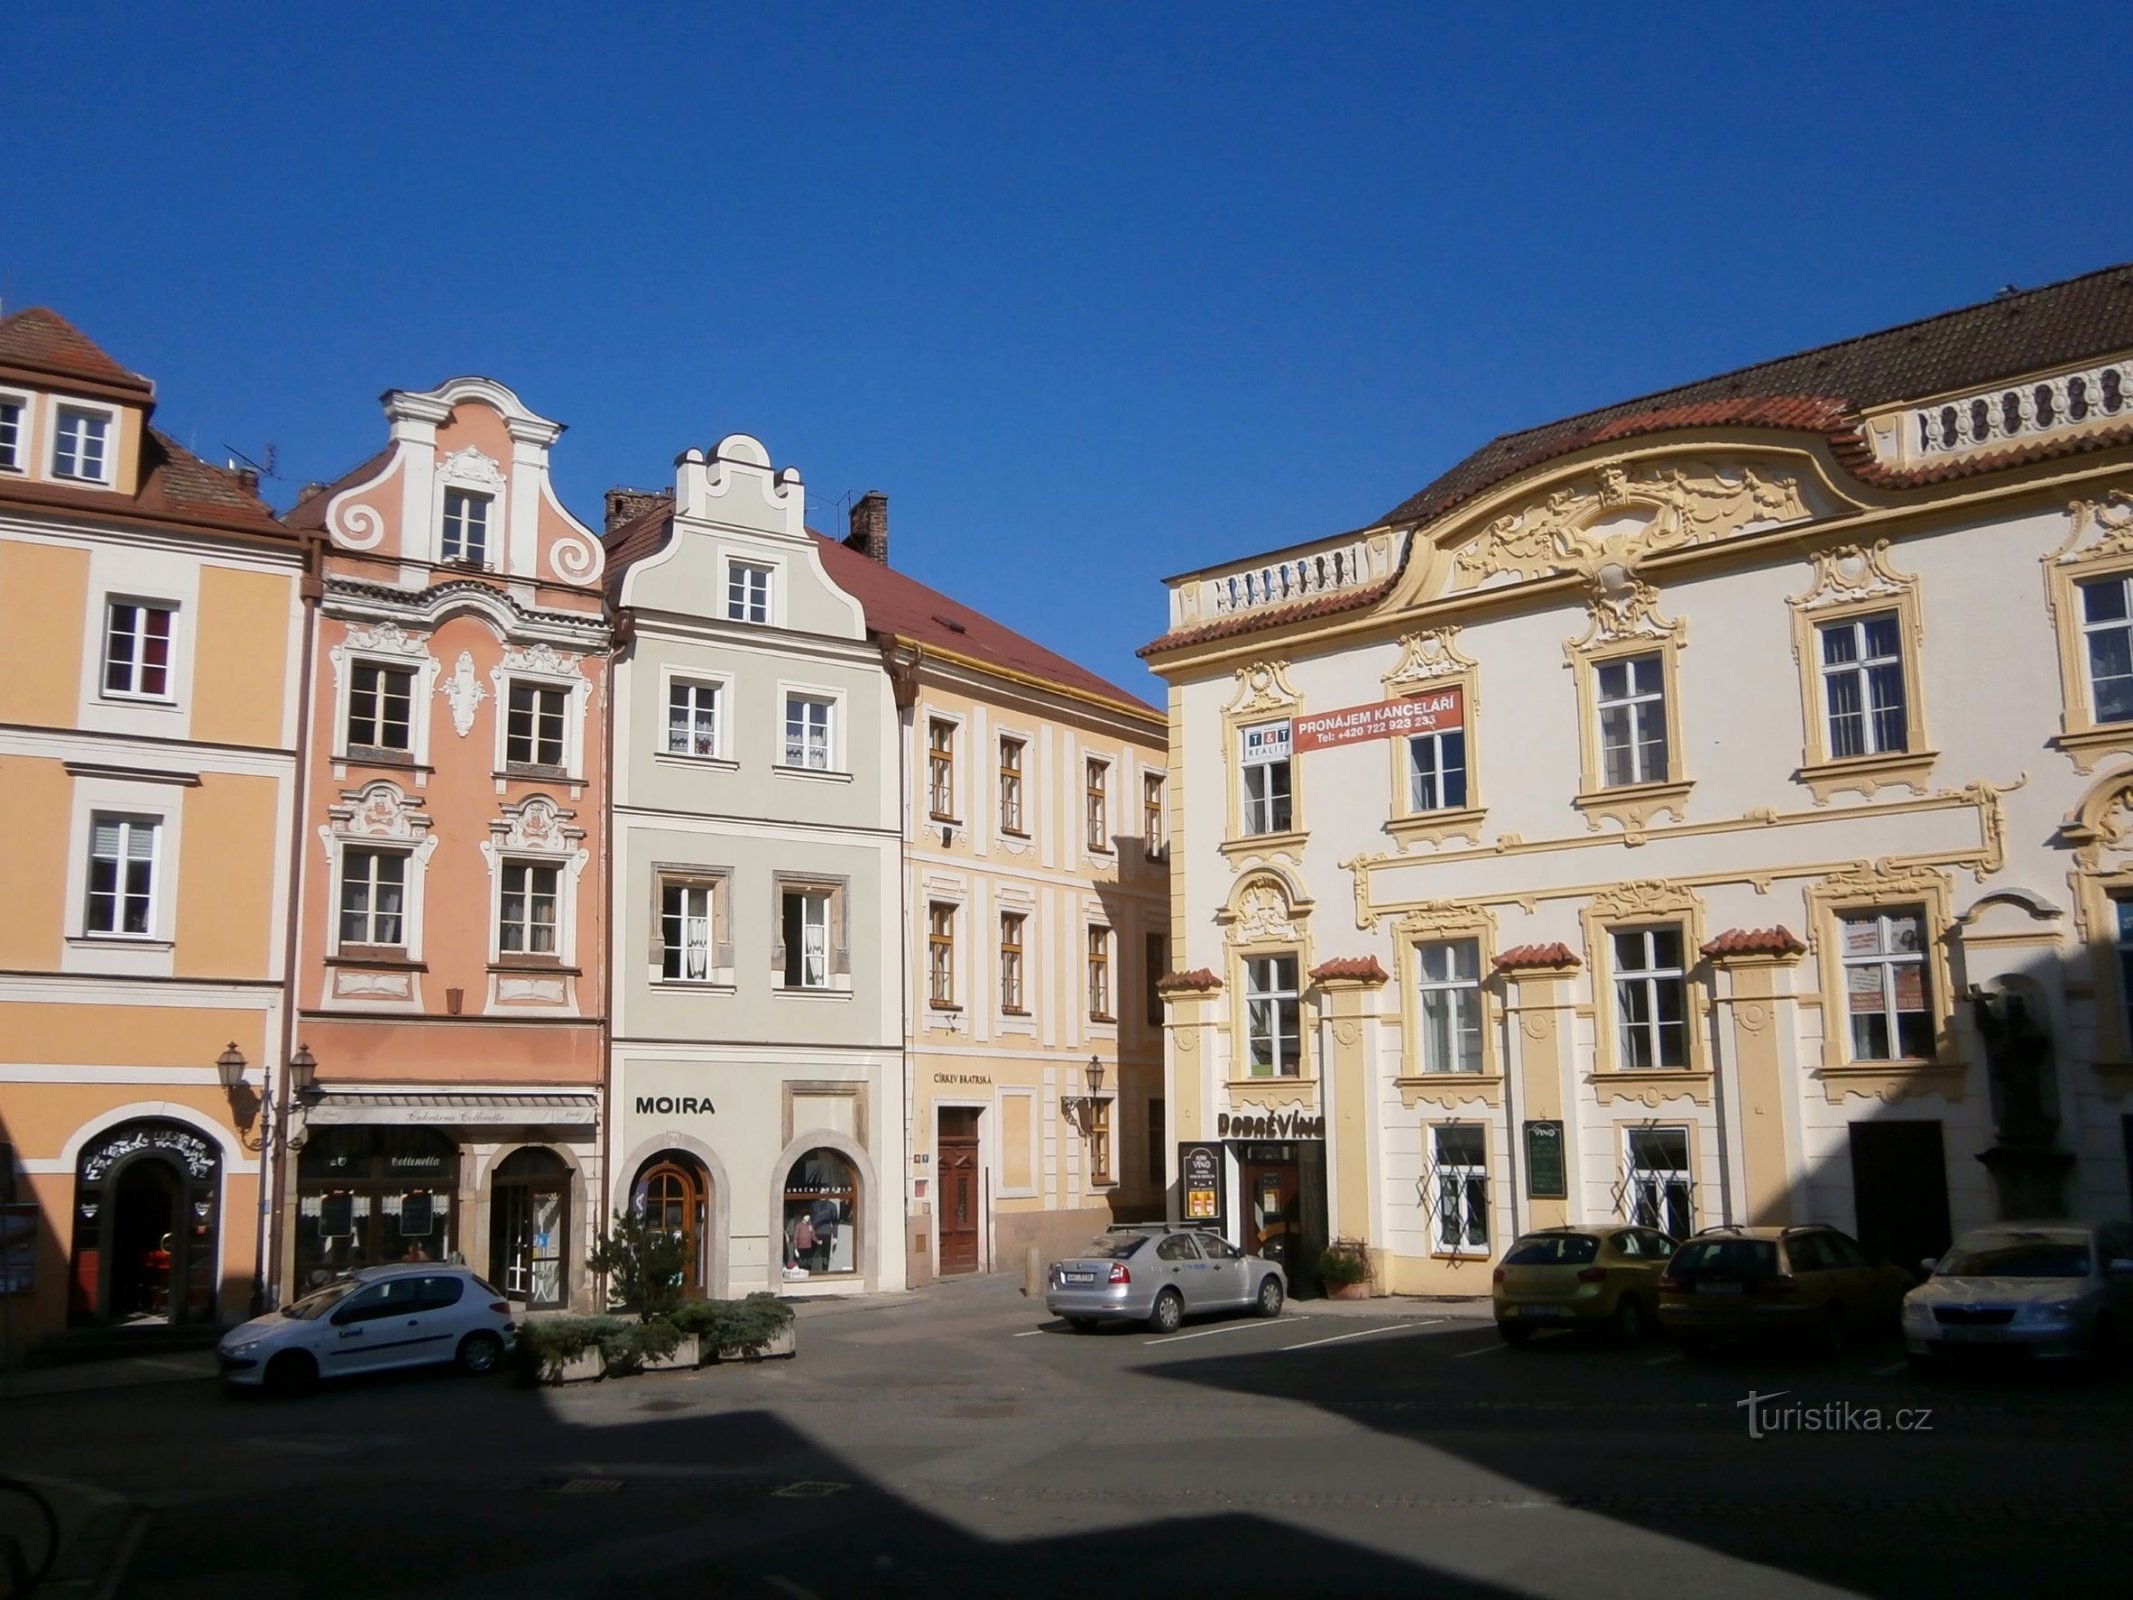 Quang cảnh số 89 từ quảng trường nhỏ ở phố V Kopečku (Hradec Králové, 28.3.2014/XNUMX/XNUMX)